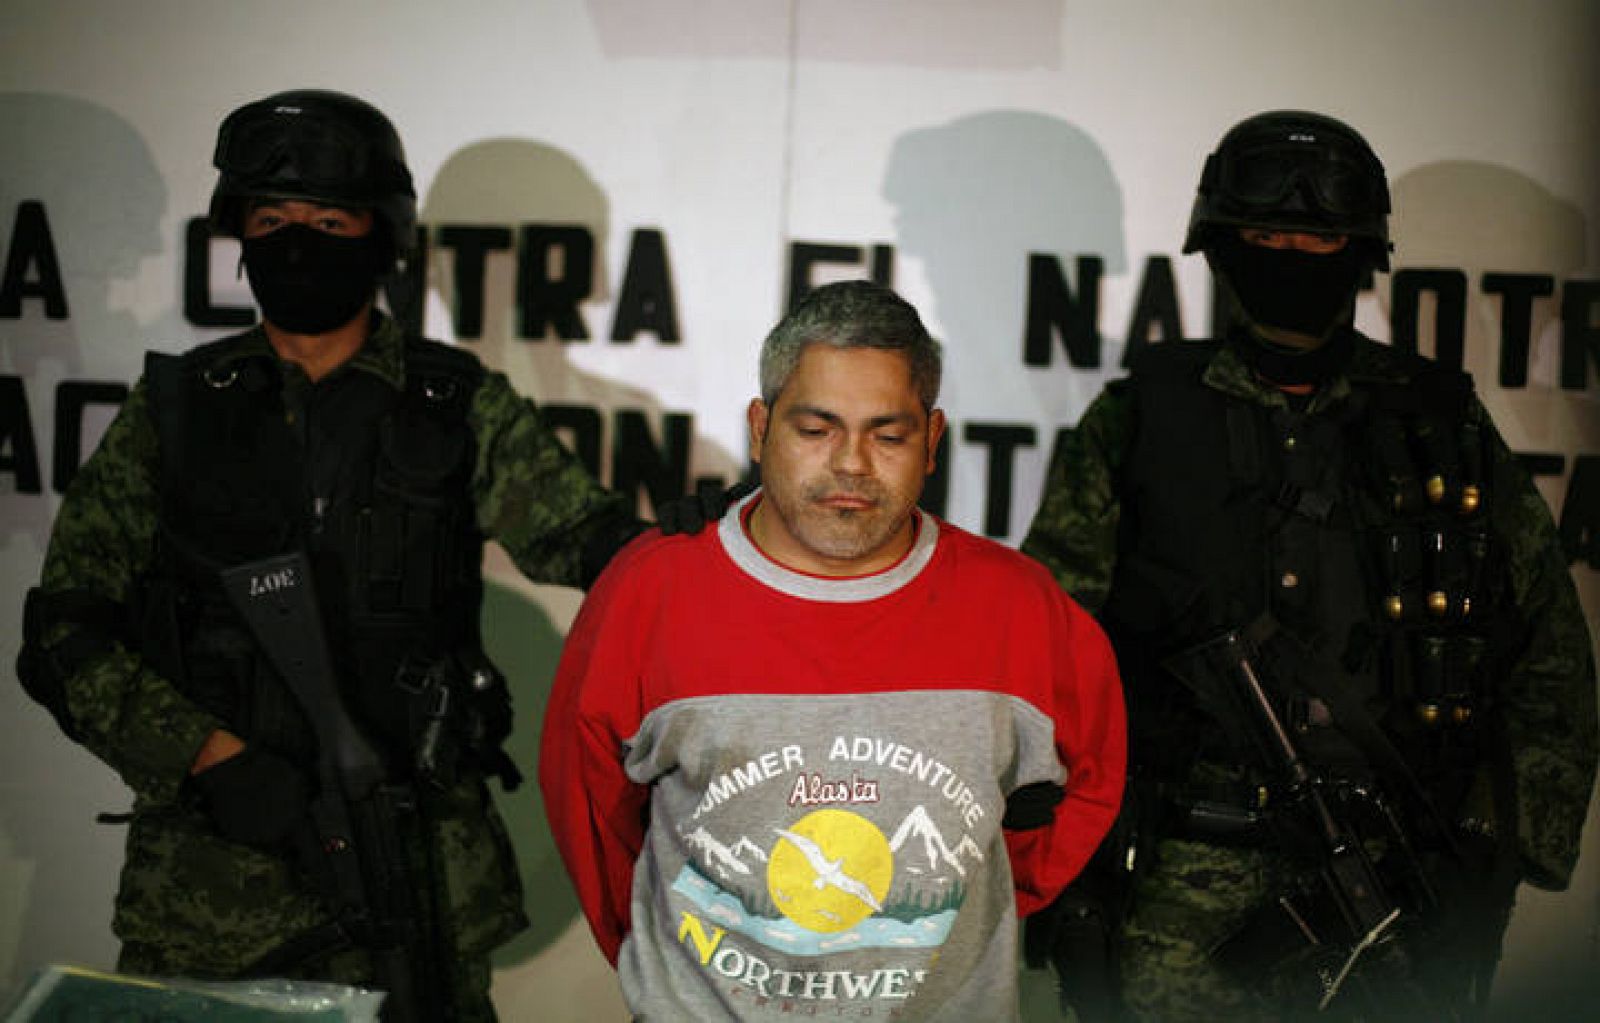 Los Zetas Criminal Tattoos - wide 1